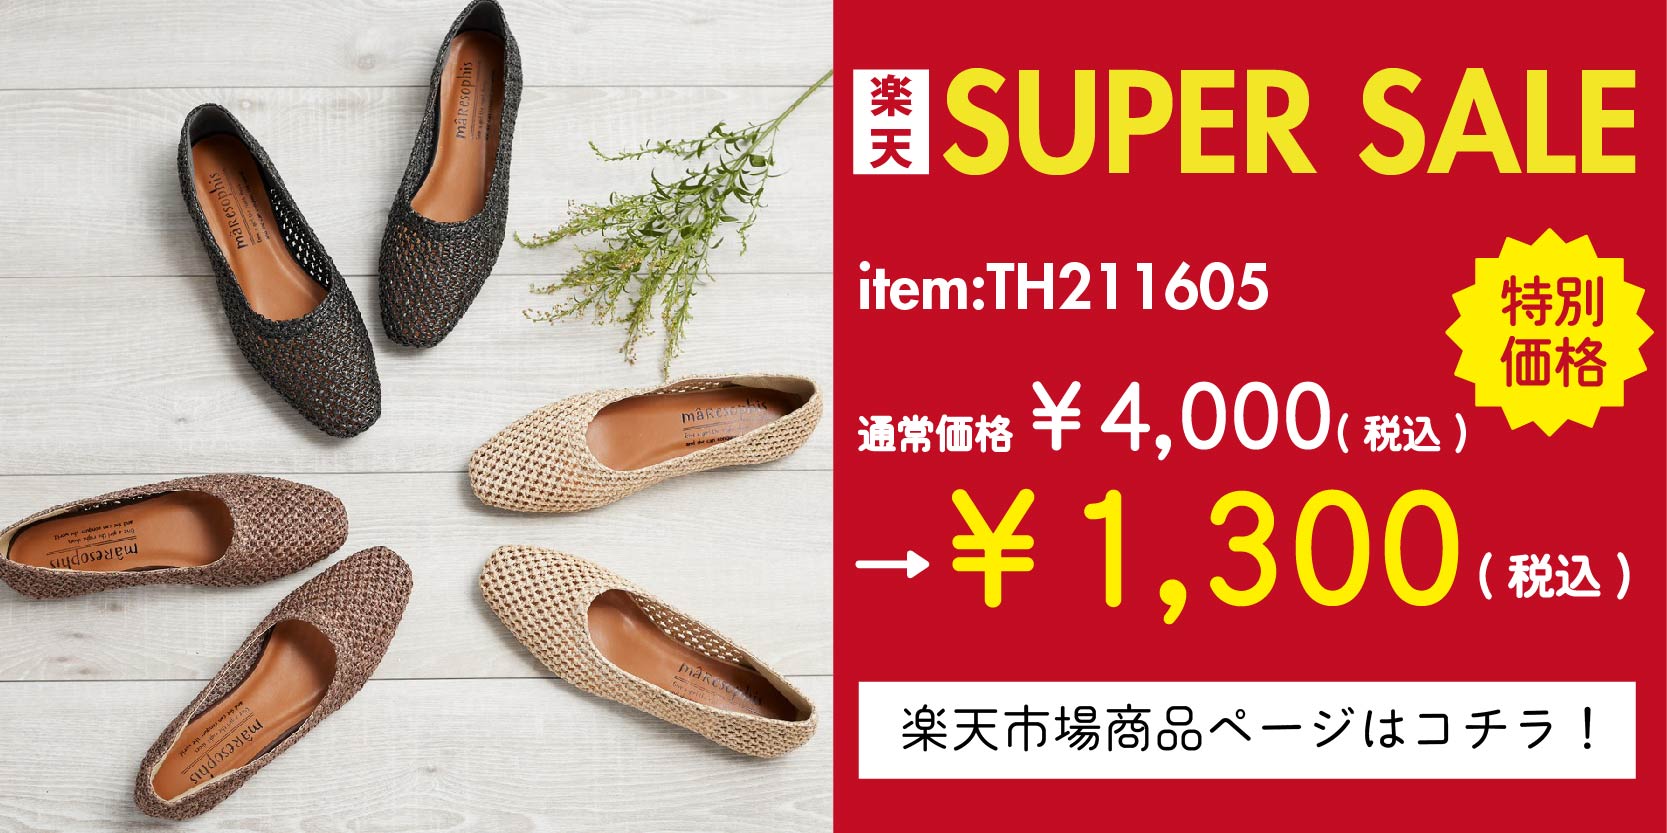 スーパーセール特価商品③：TH211605( ラフィアフラット) 通常価格¥4,000(税込)→特別価格￥2,000(税込) 商品ページはこちらをタップ！